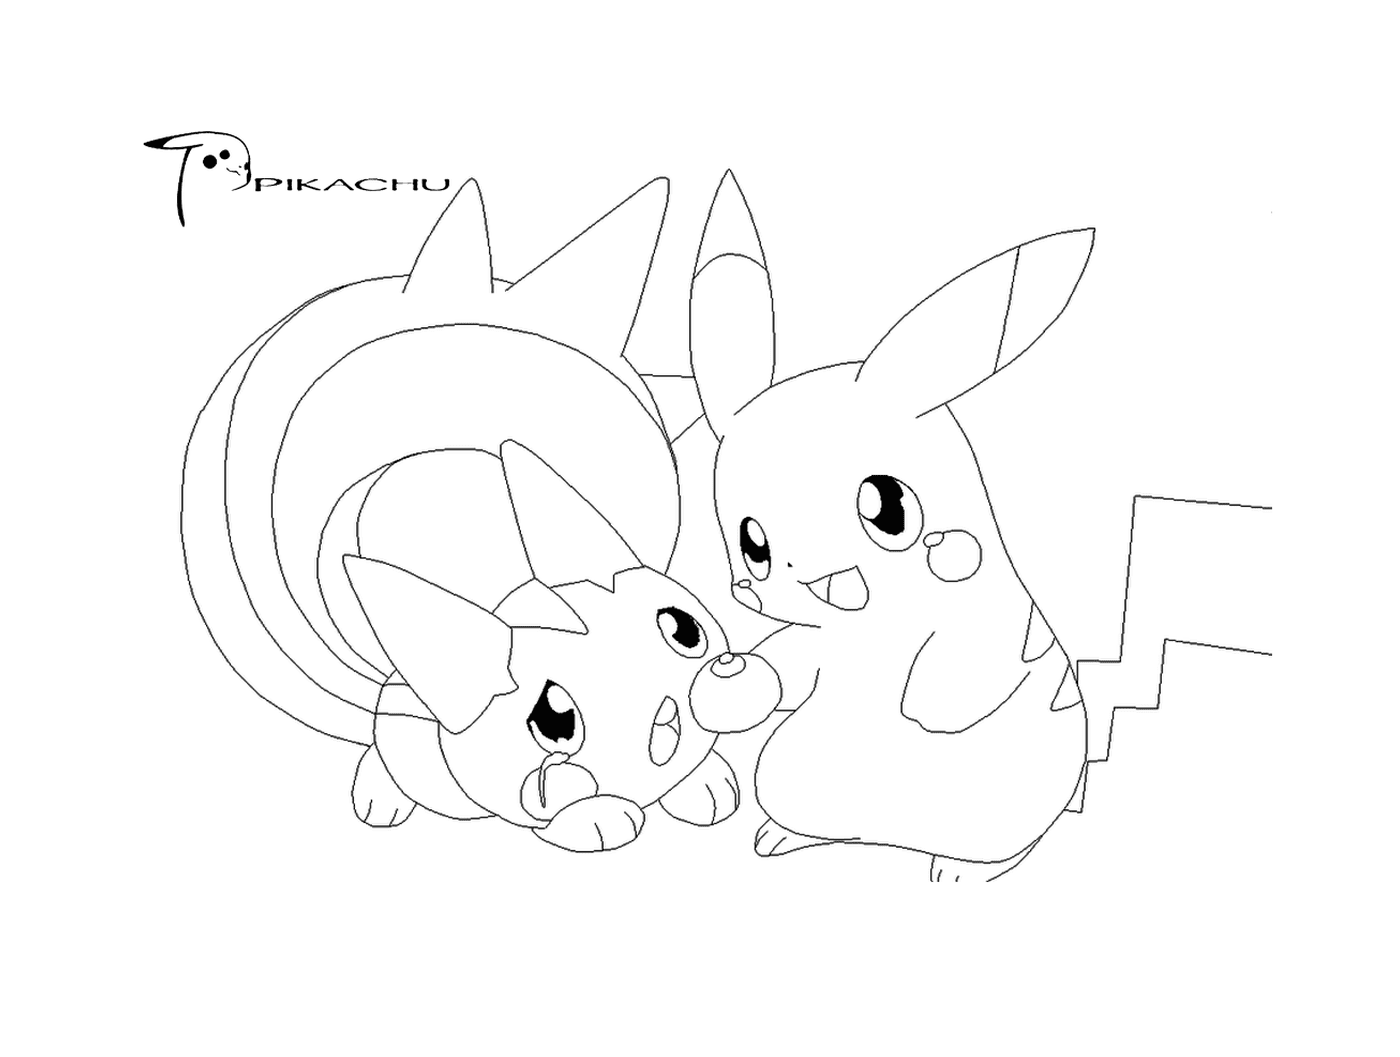  Zwei Pikachus stehen zusammen 